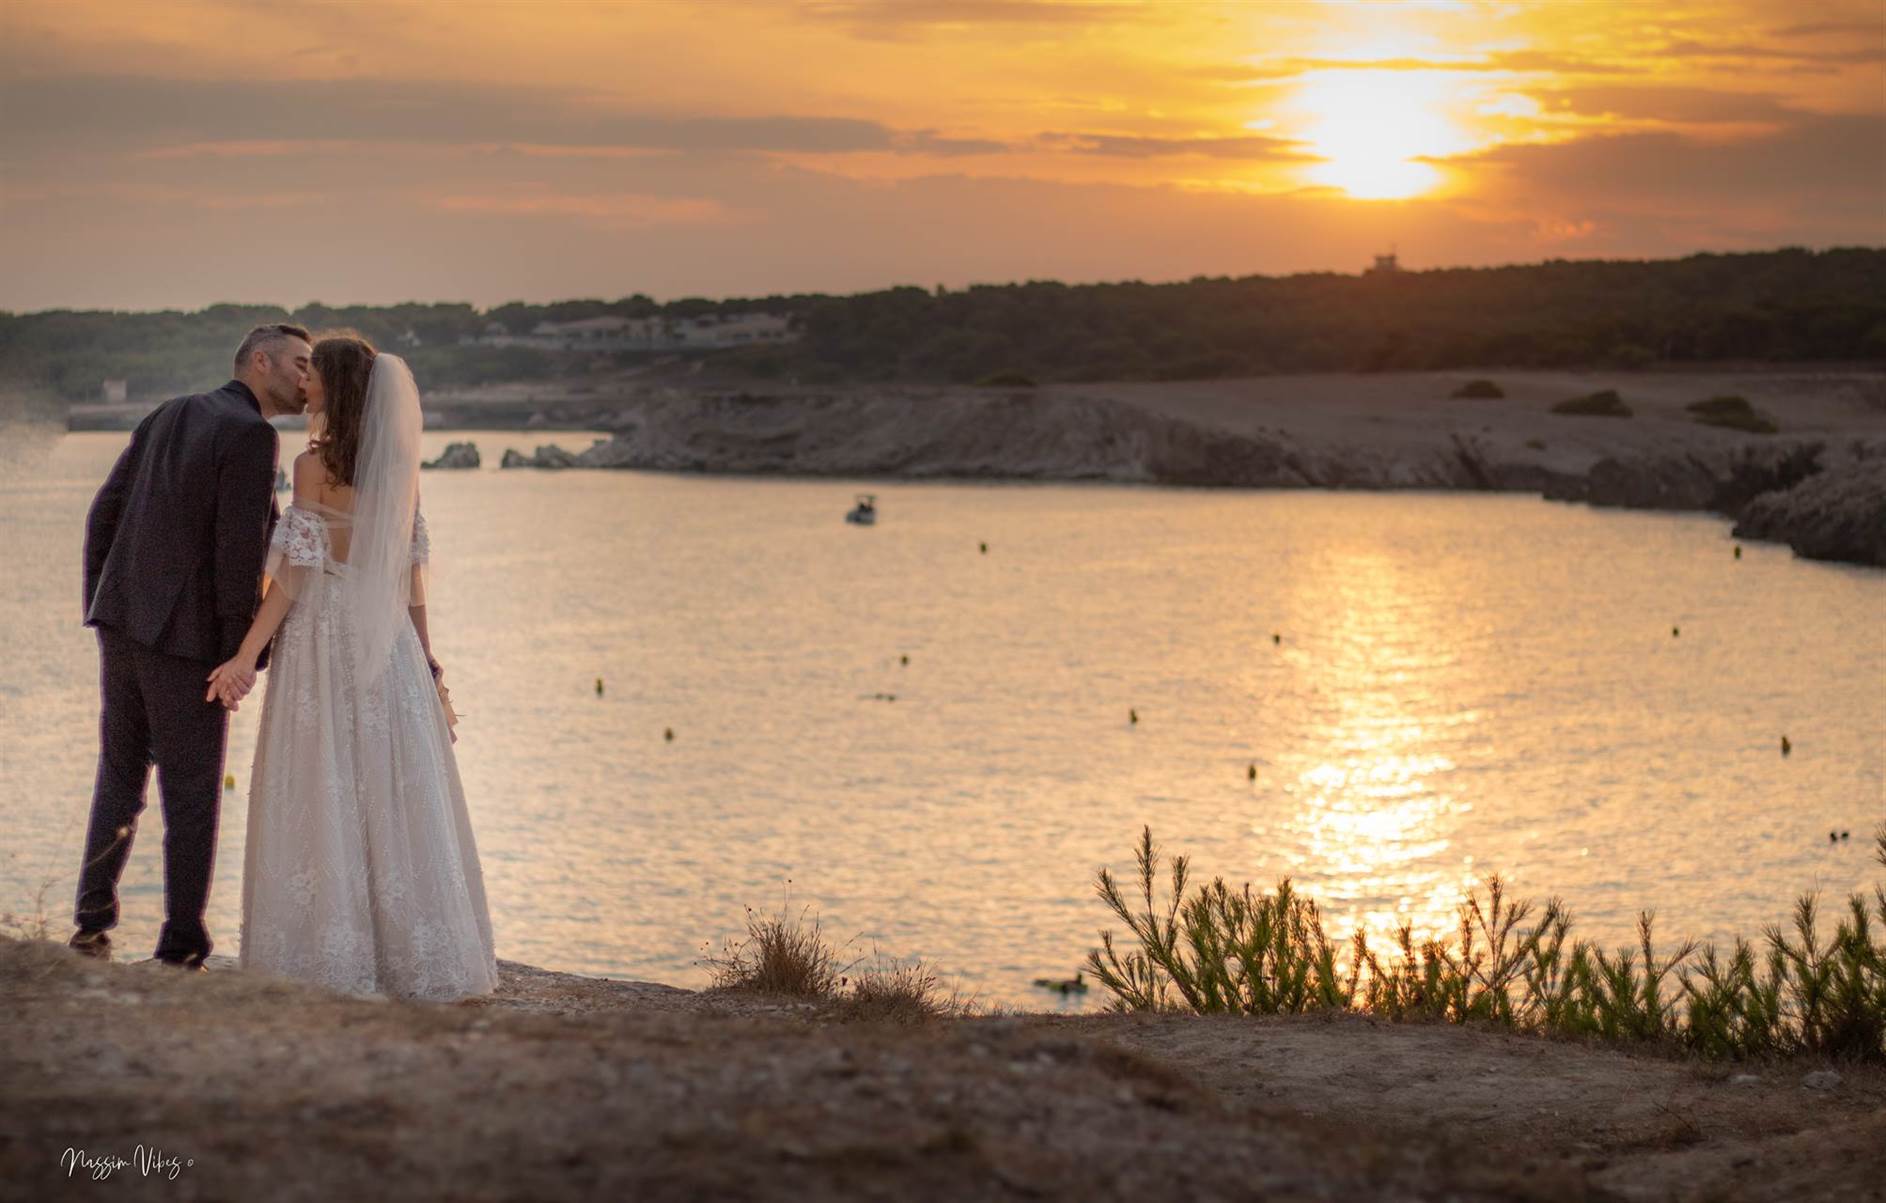 Immortalisez votre amour à Aix-en-Provence avec Nassim, le photographe de mariage passionné 51